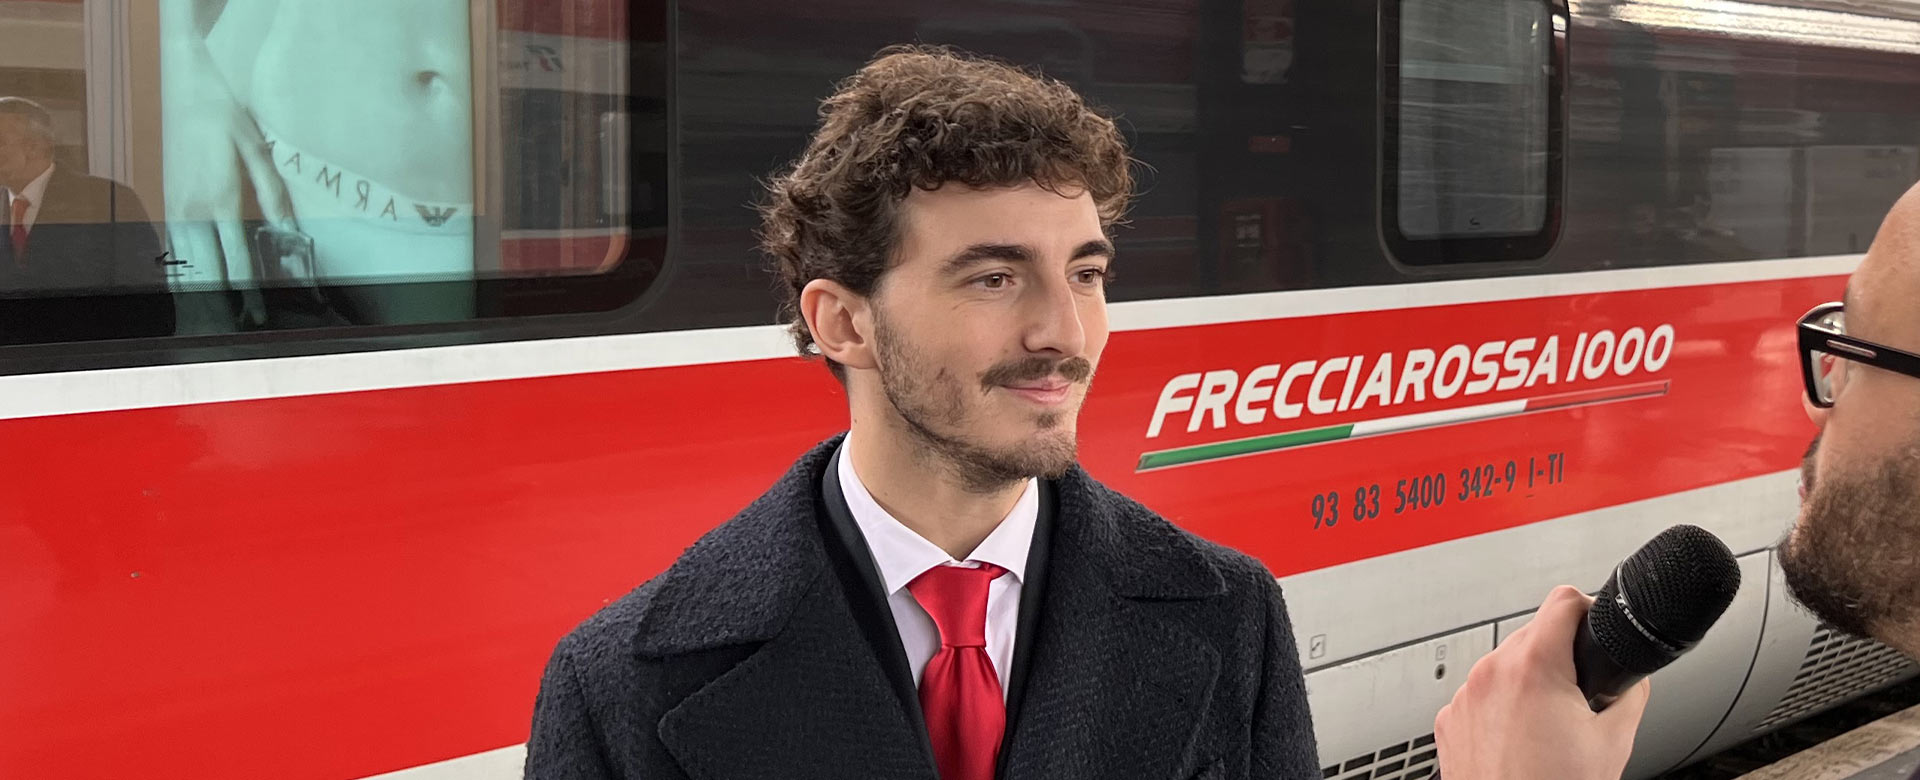 Pecco Bagnaia intervistato da FSNews dopo il viaggio sul Frecciarossa per l'incontro con Sergio Mattarella al Quirinale